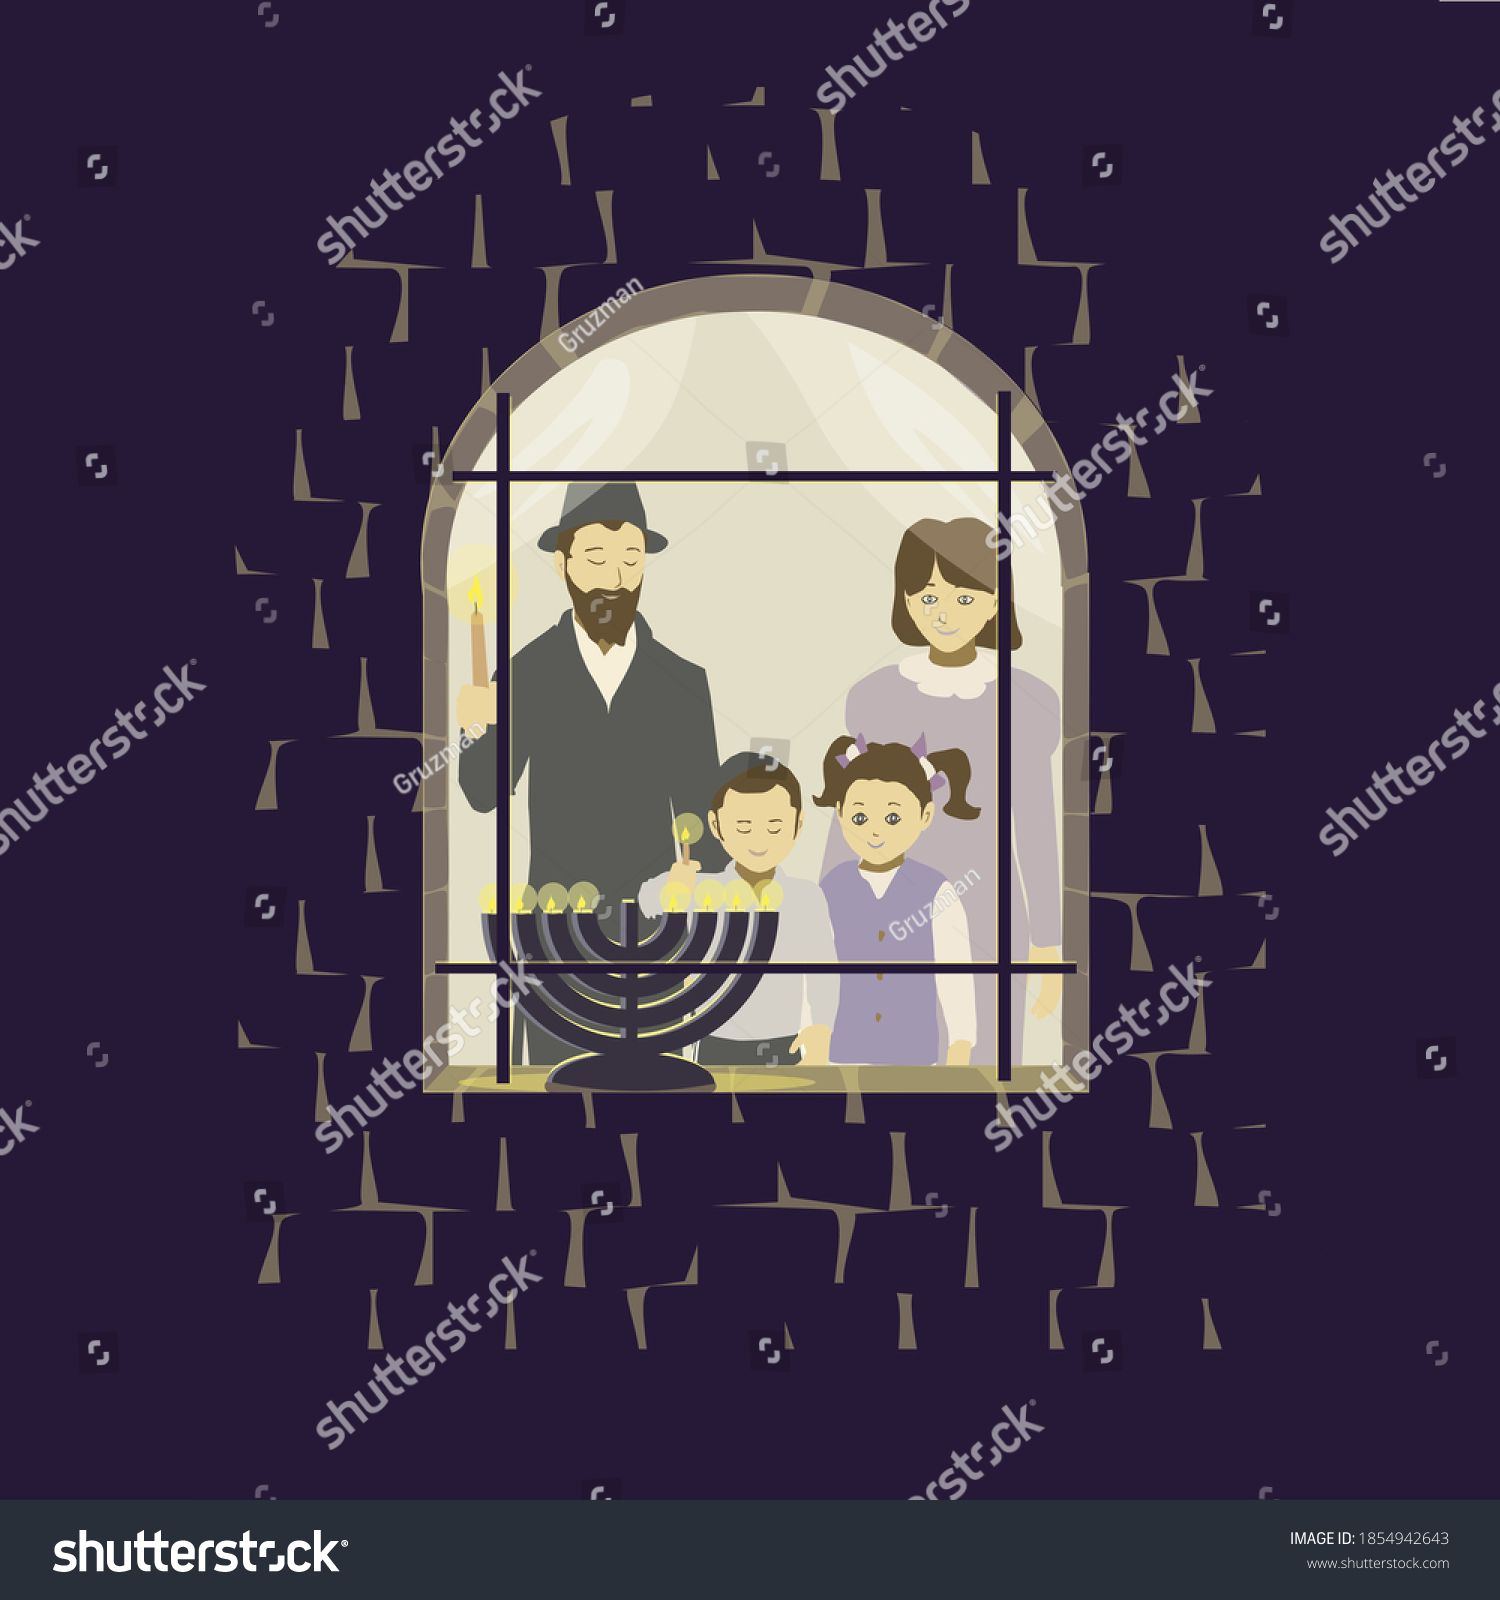 ציור של משפחה מדליקה נרות חנוכה בחלון הבית-1854942643.jpg